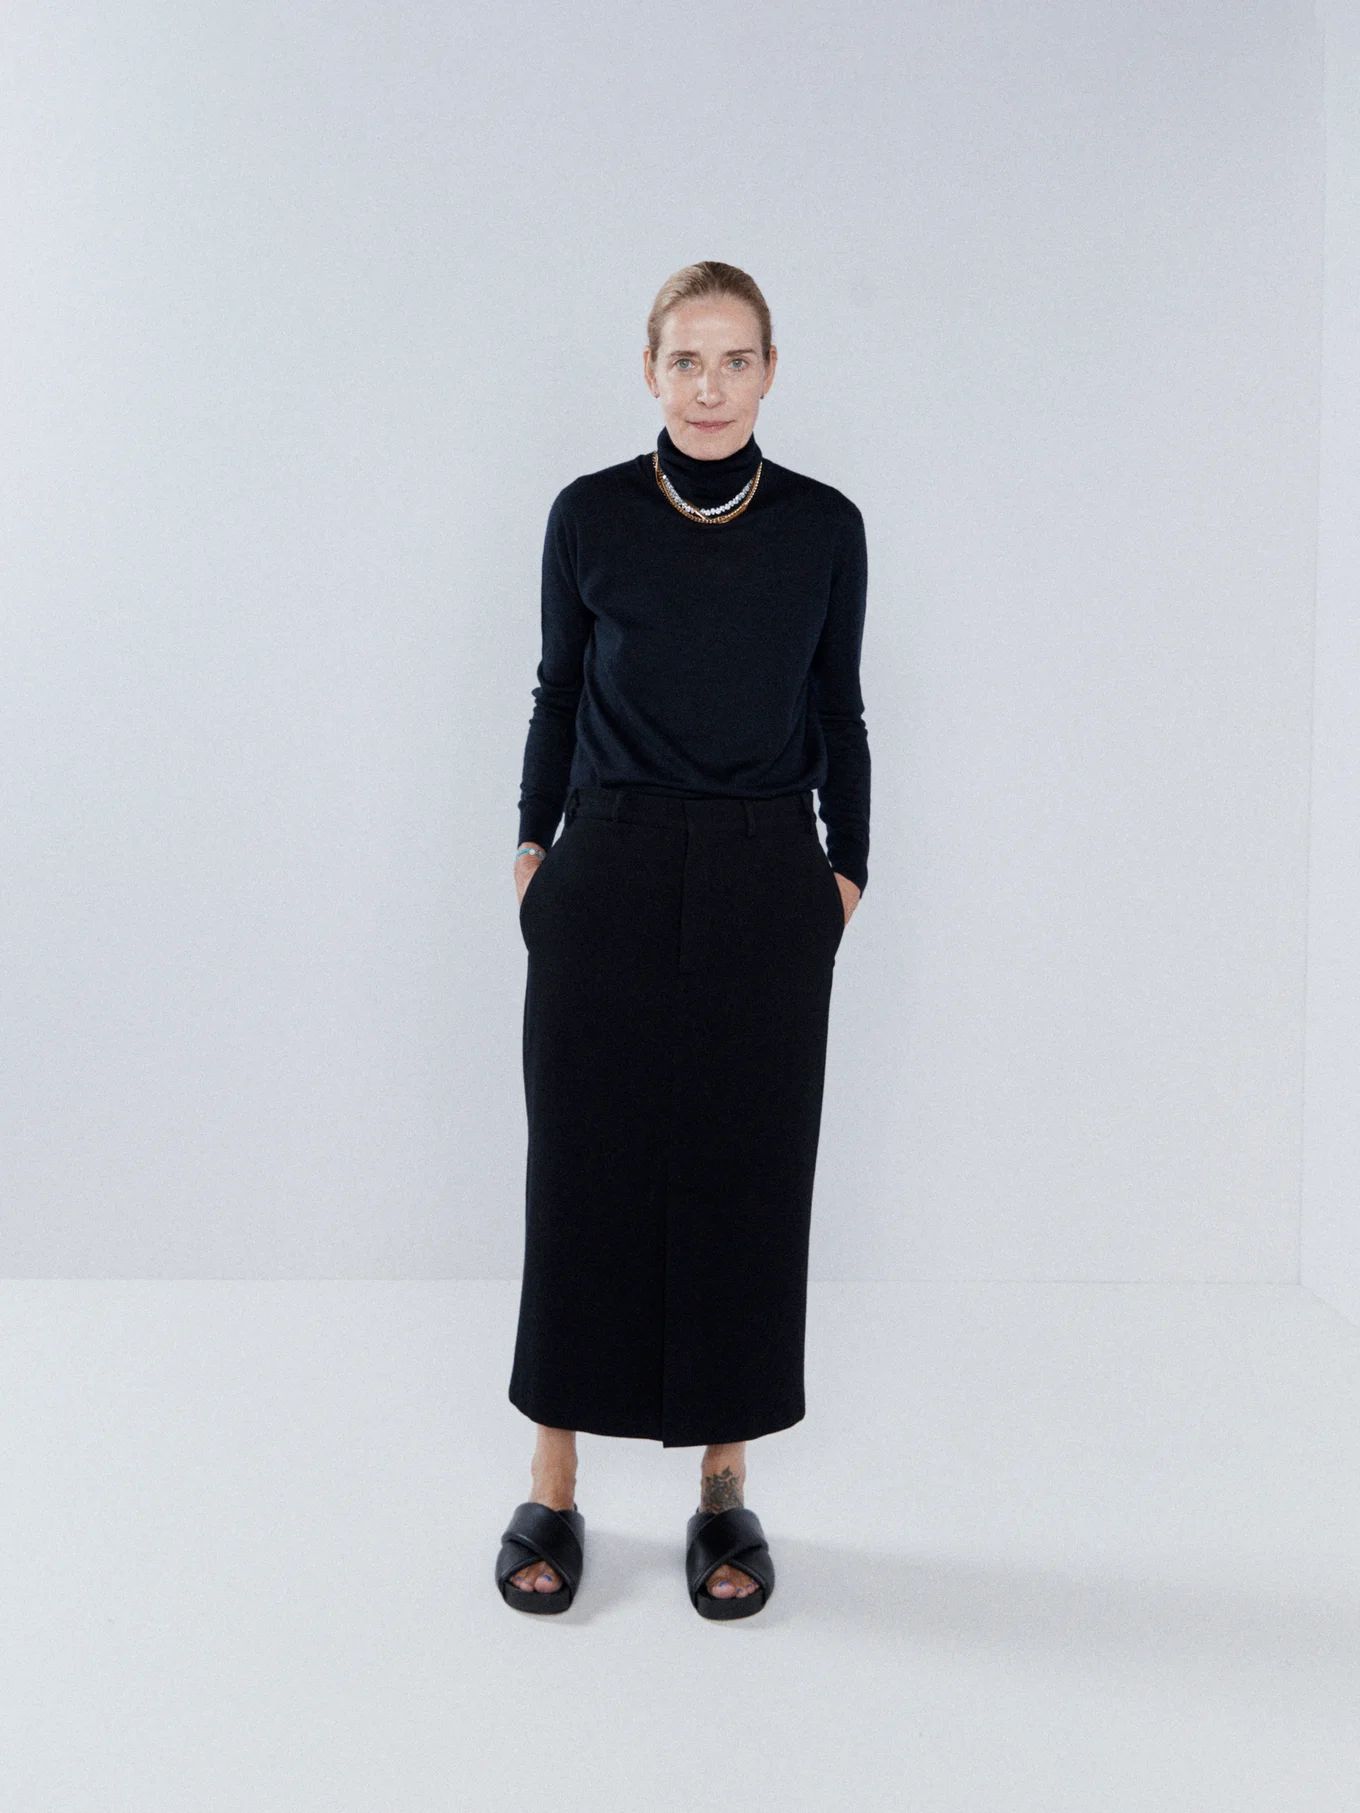 Uniform wool-blend front split skirt | Matches (UK)